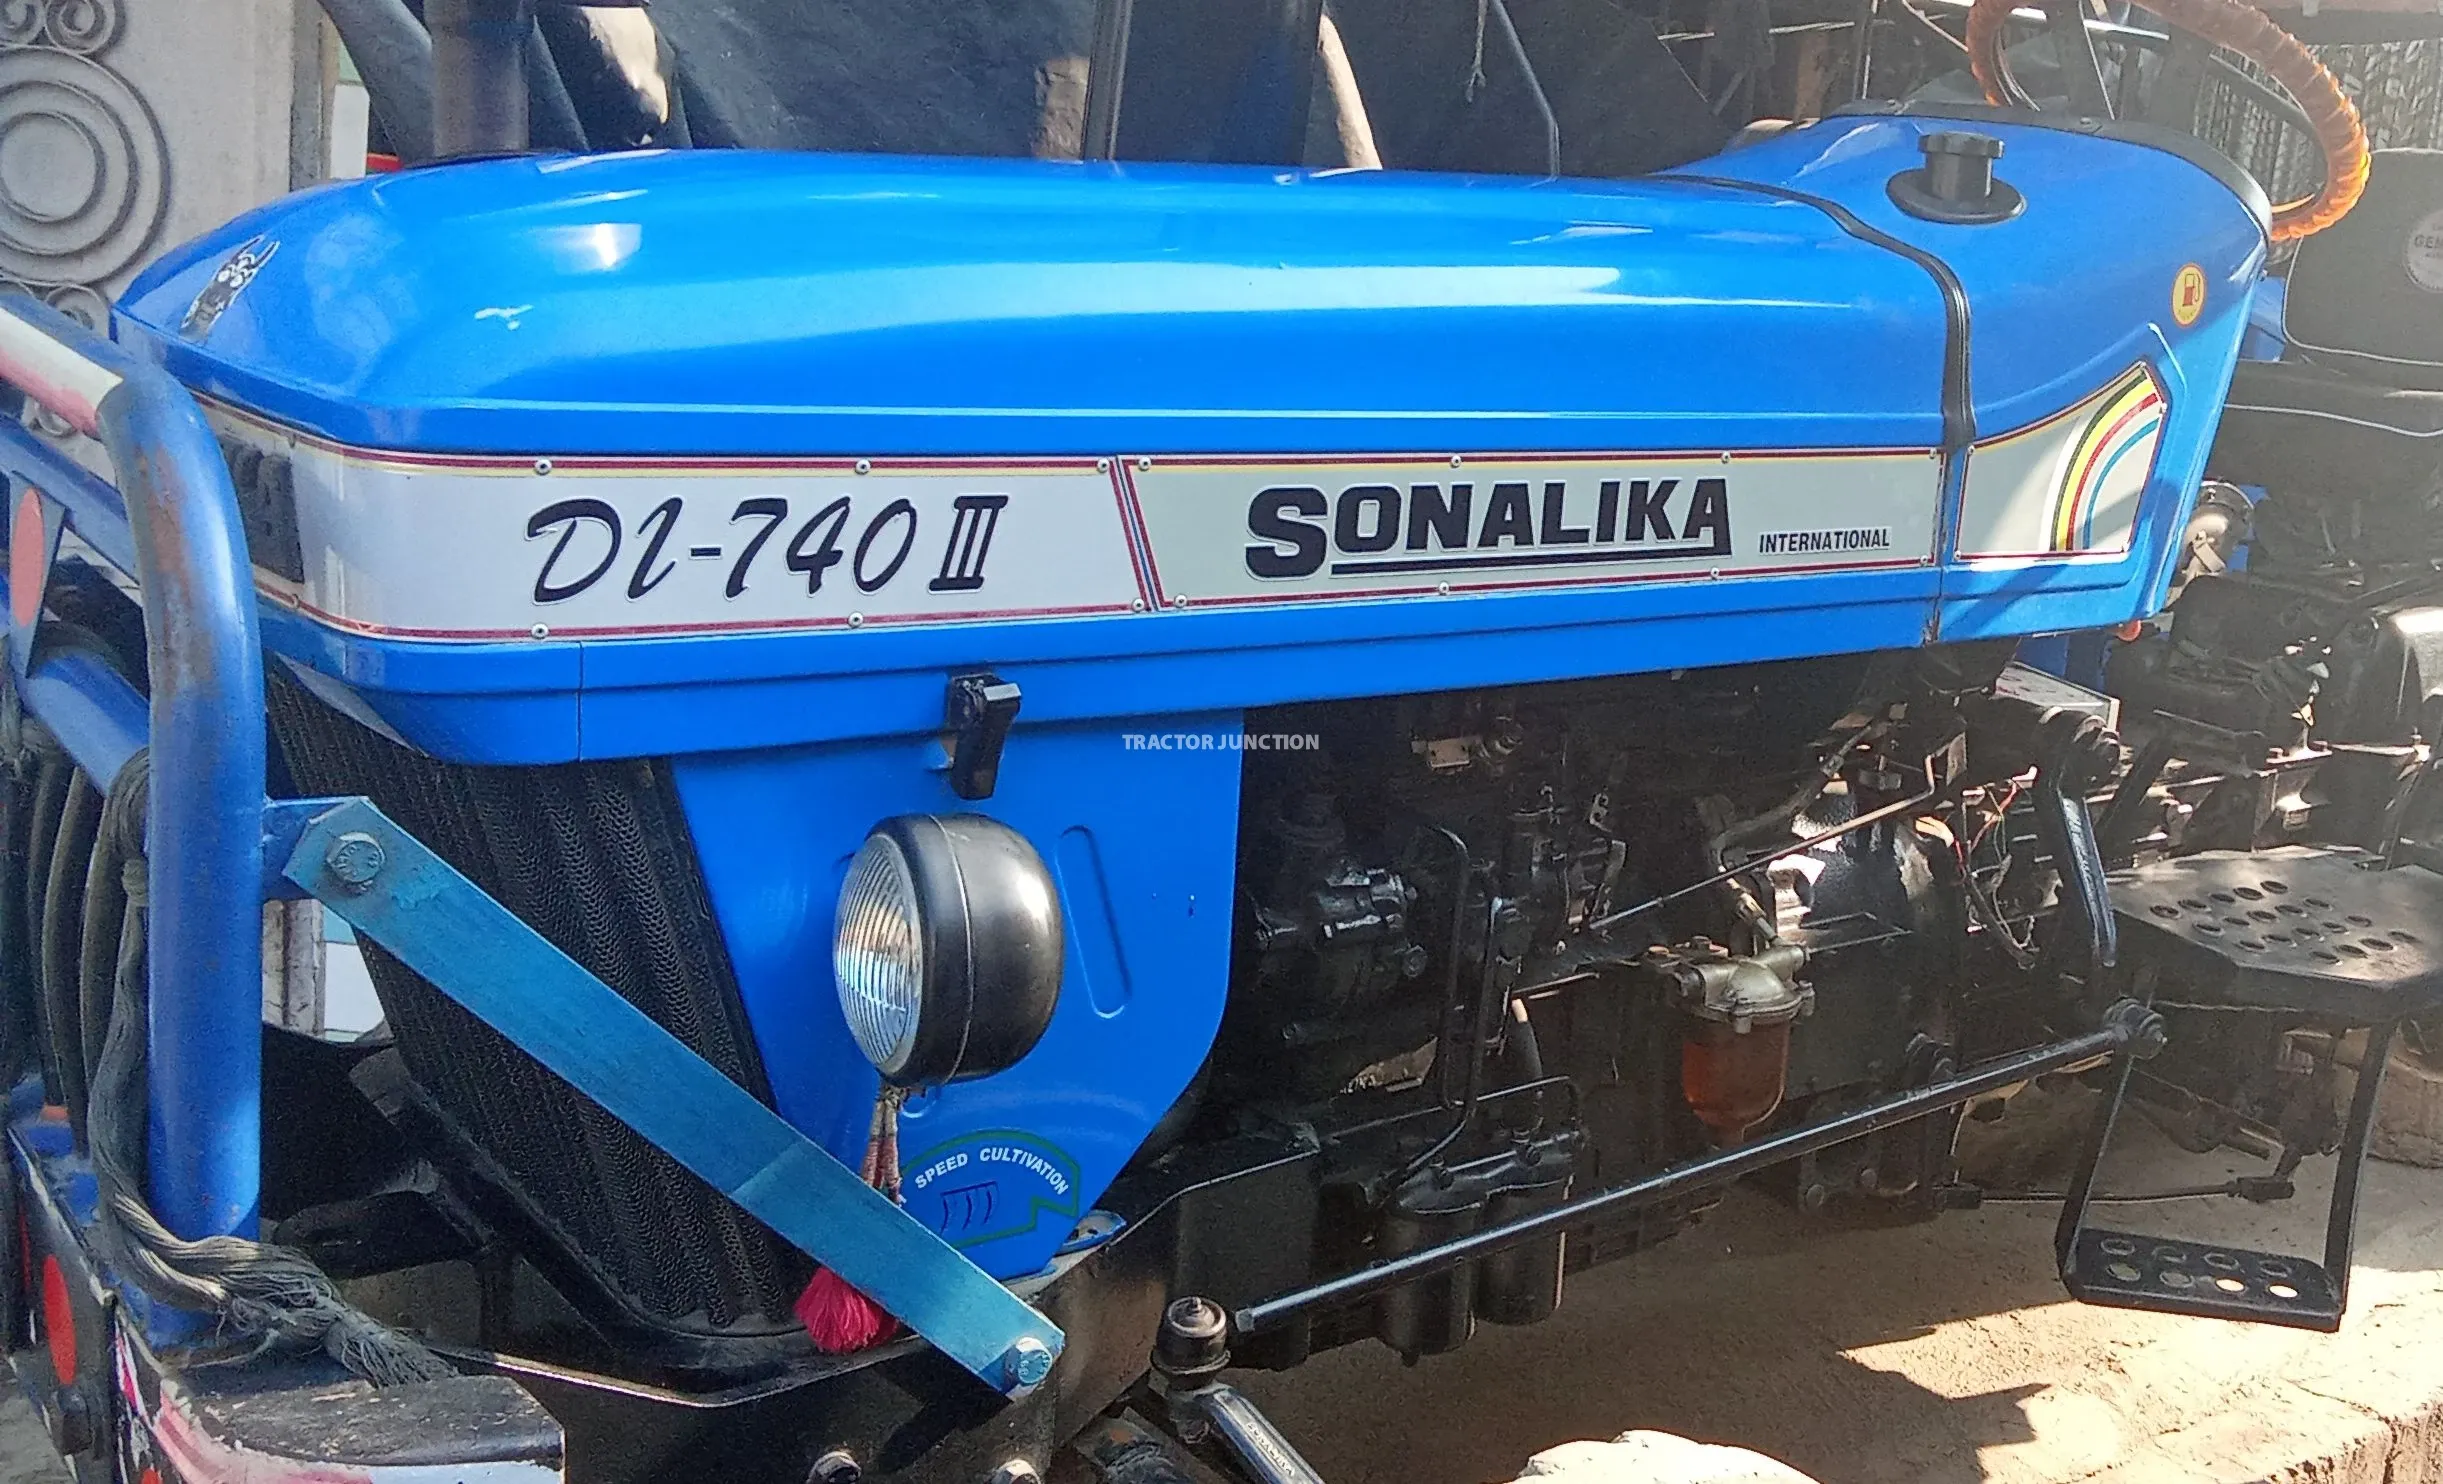 Sonalika DI 740 III S3